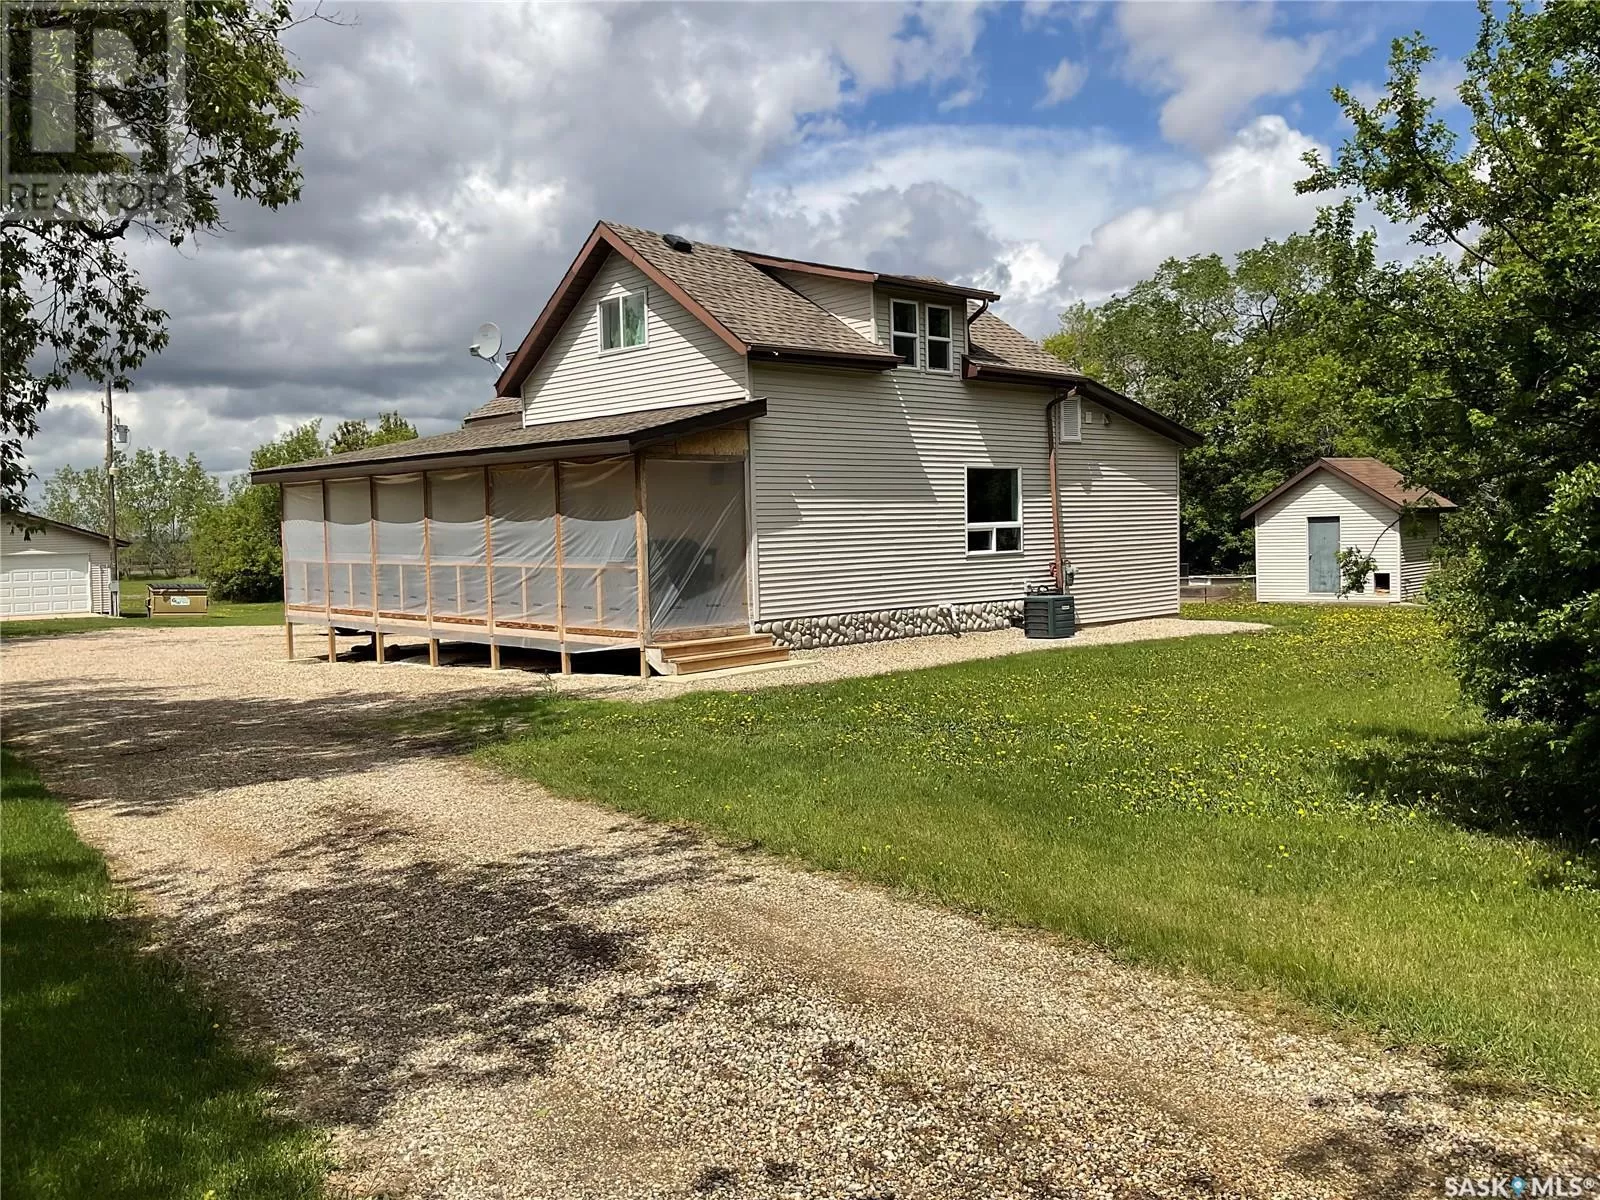 House for rent: Nordstrom Acreage, St. Louis RM No. 431, Saskatchewan S0J 1E0